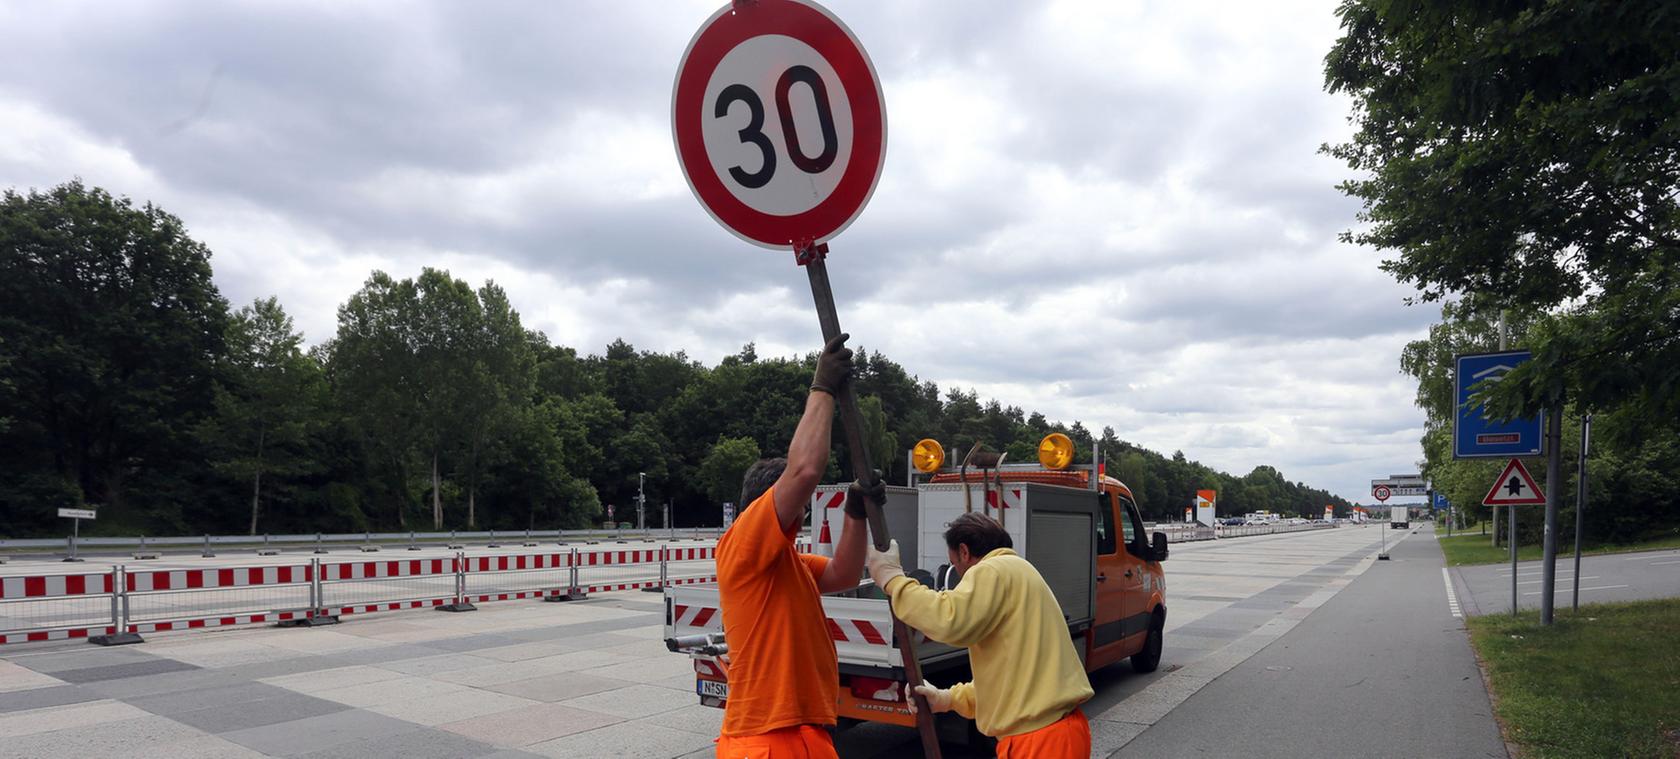 Nachdem am 11. Juni eine Skaterin auf der Großen Straße totgefahren wurde, hat die Stadt Nürnberg dort eine Tempo-30-Zone eignerichtet.